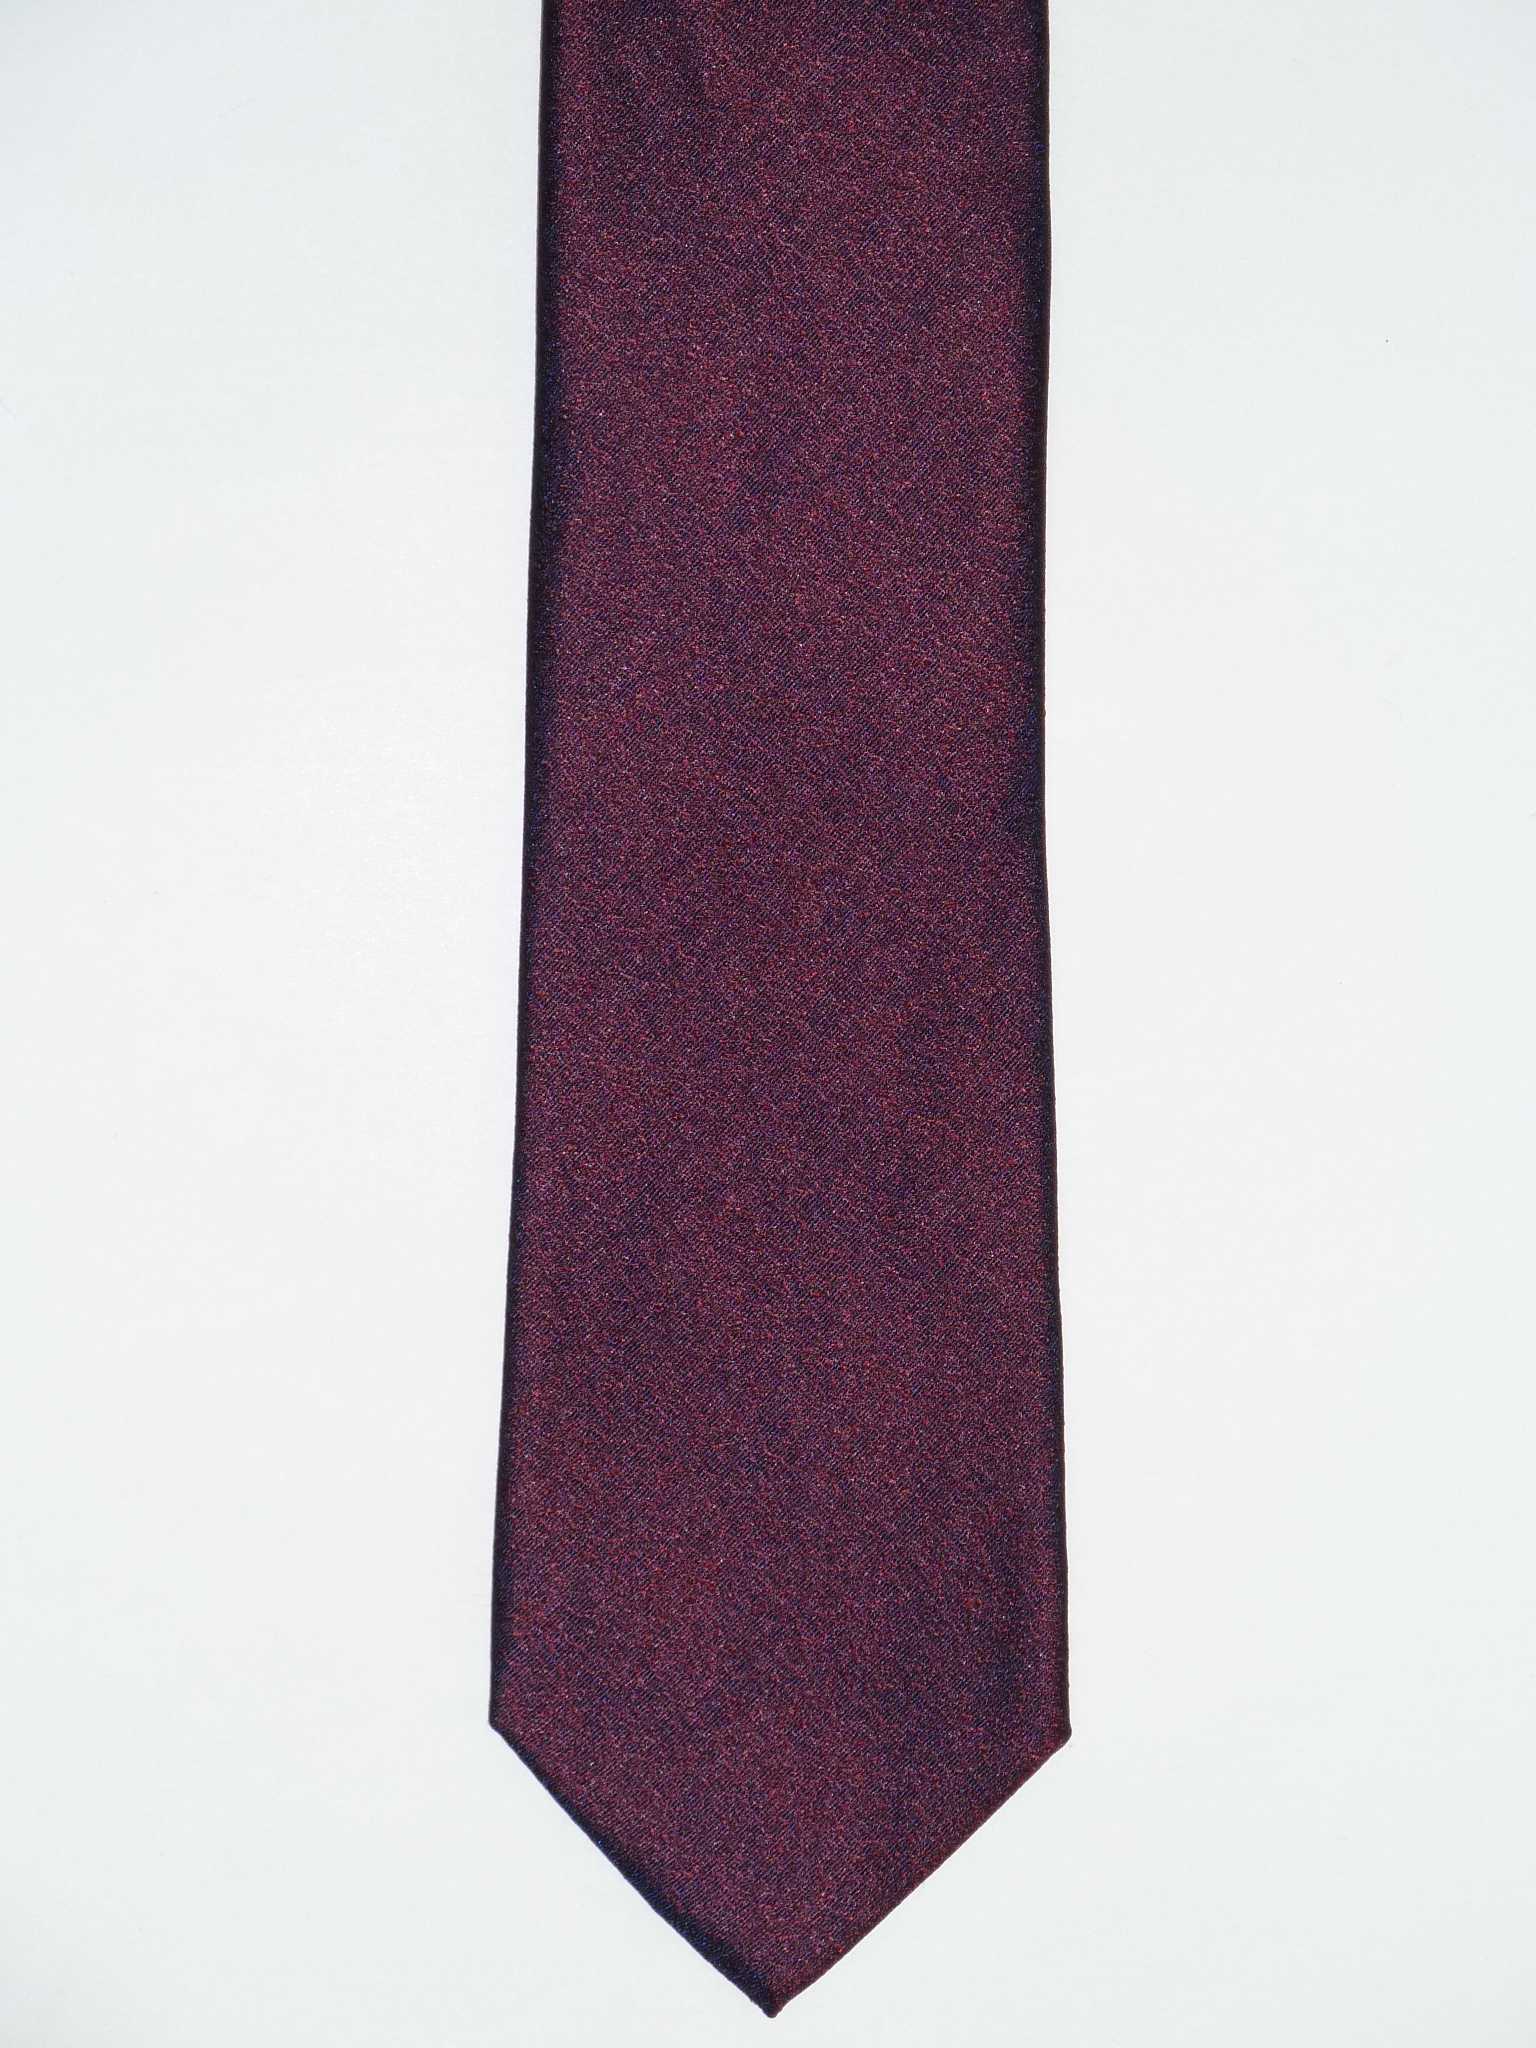 Krawattenfabrik 7,5cm, MAICA Krawatte, 100% Seide, – Struktur, offene Bordeaux